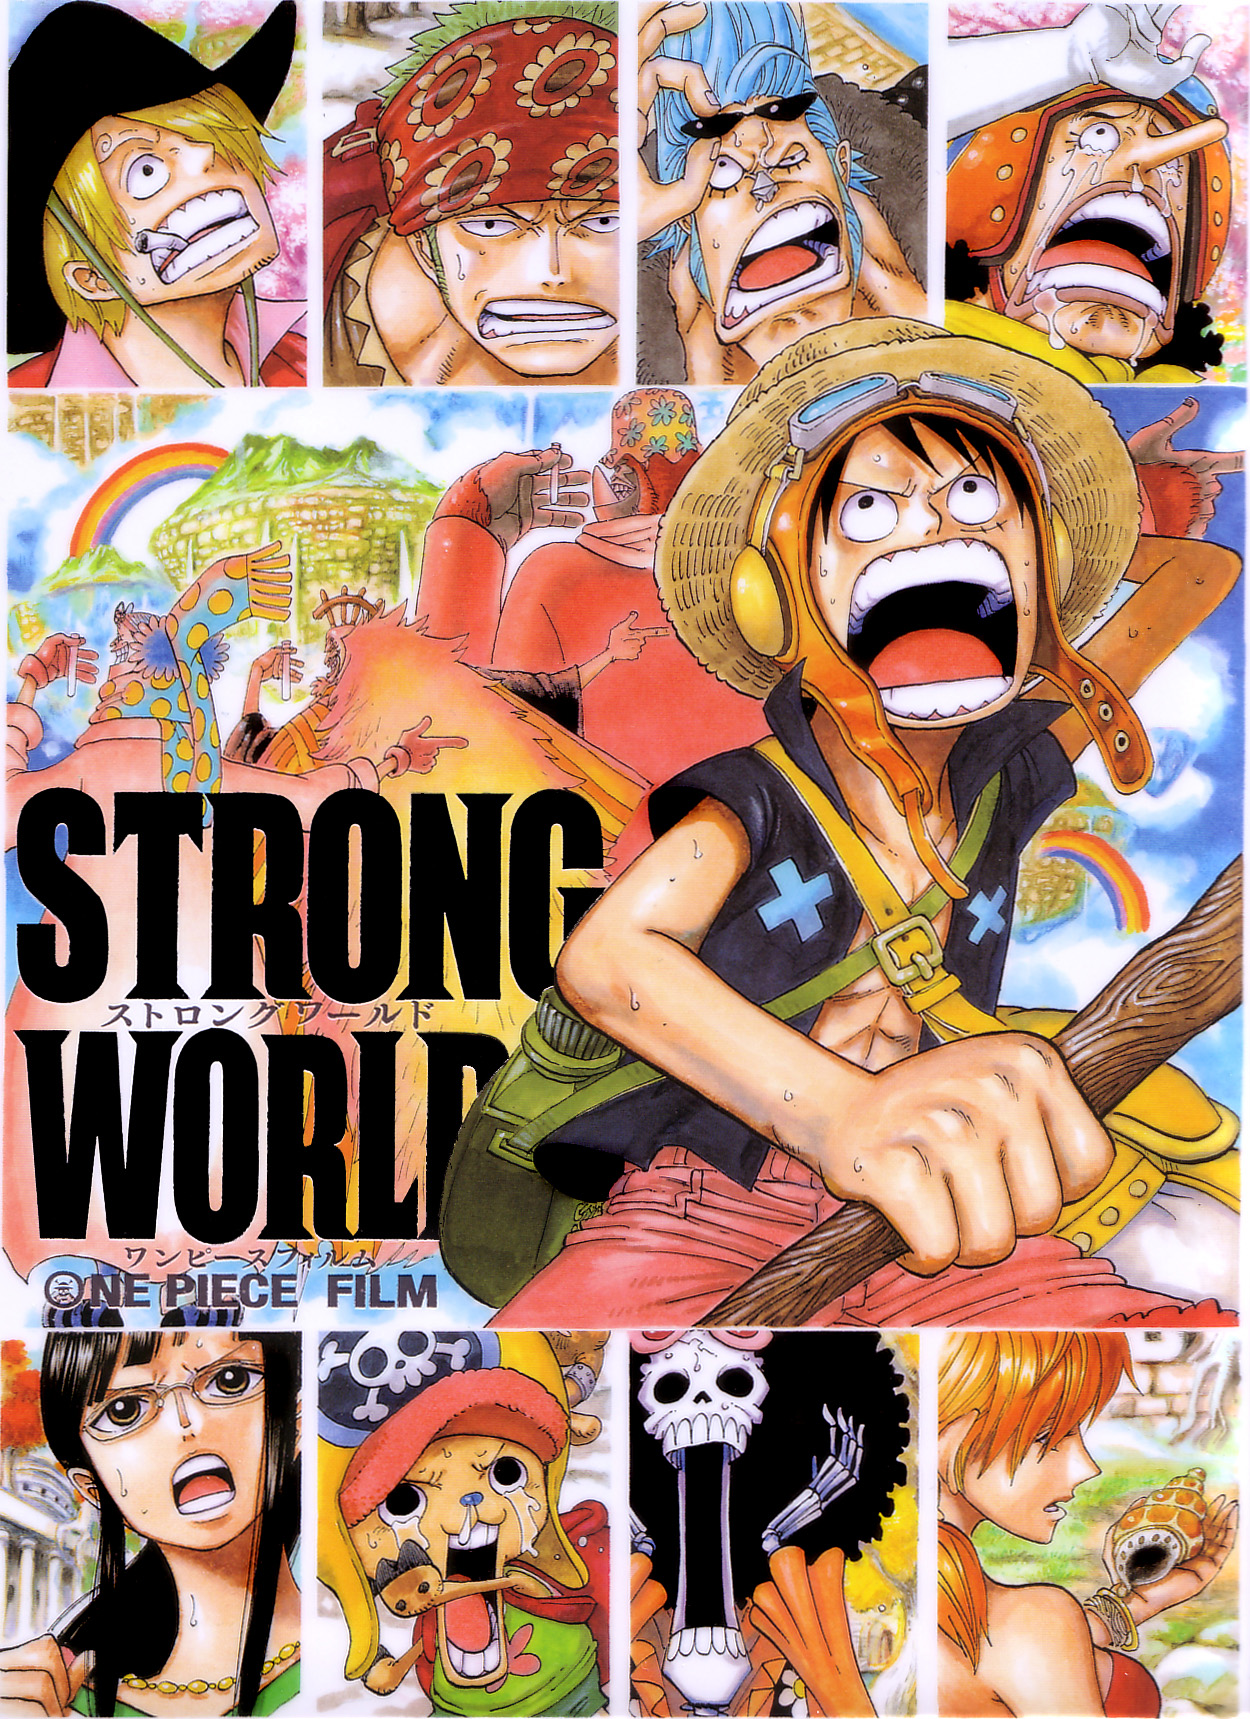 One Piece Film: Strong World | One Piece Wiki | FANDOM powered by Wikia